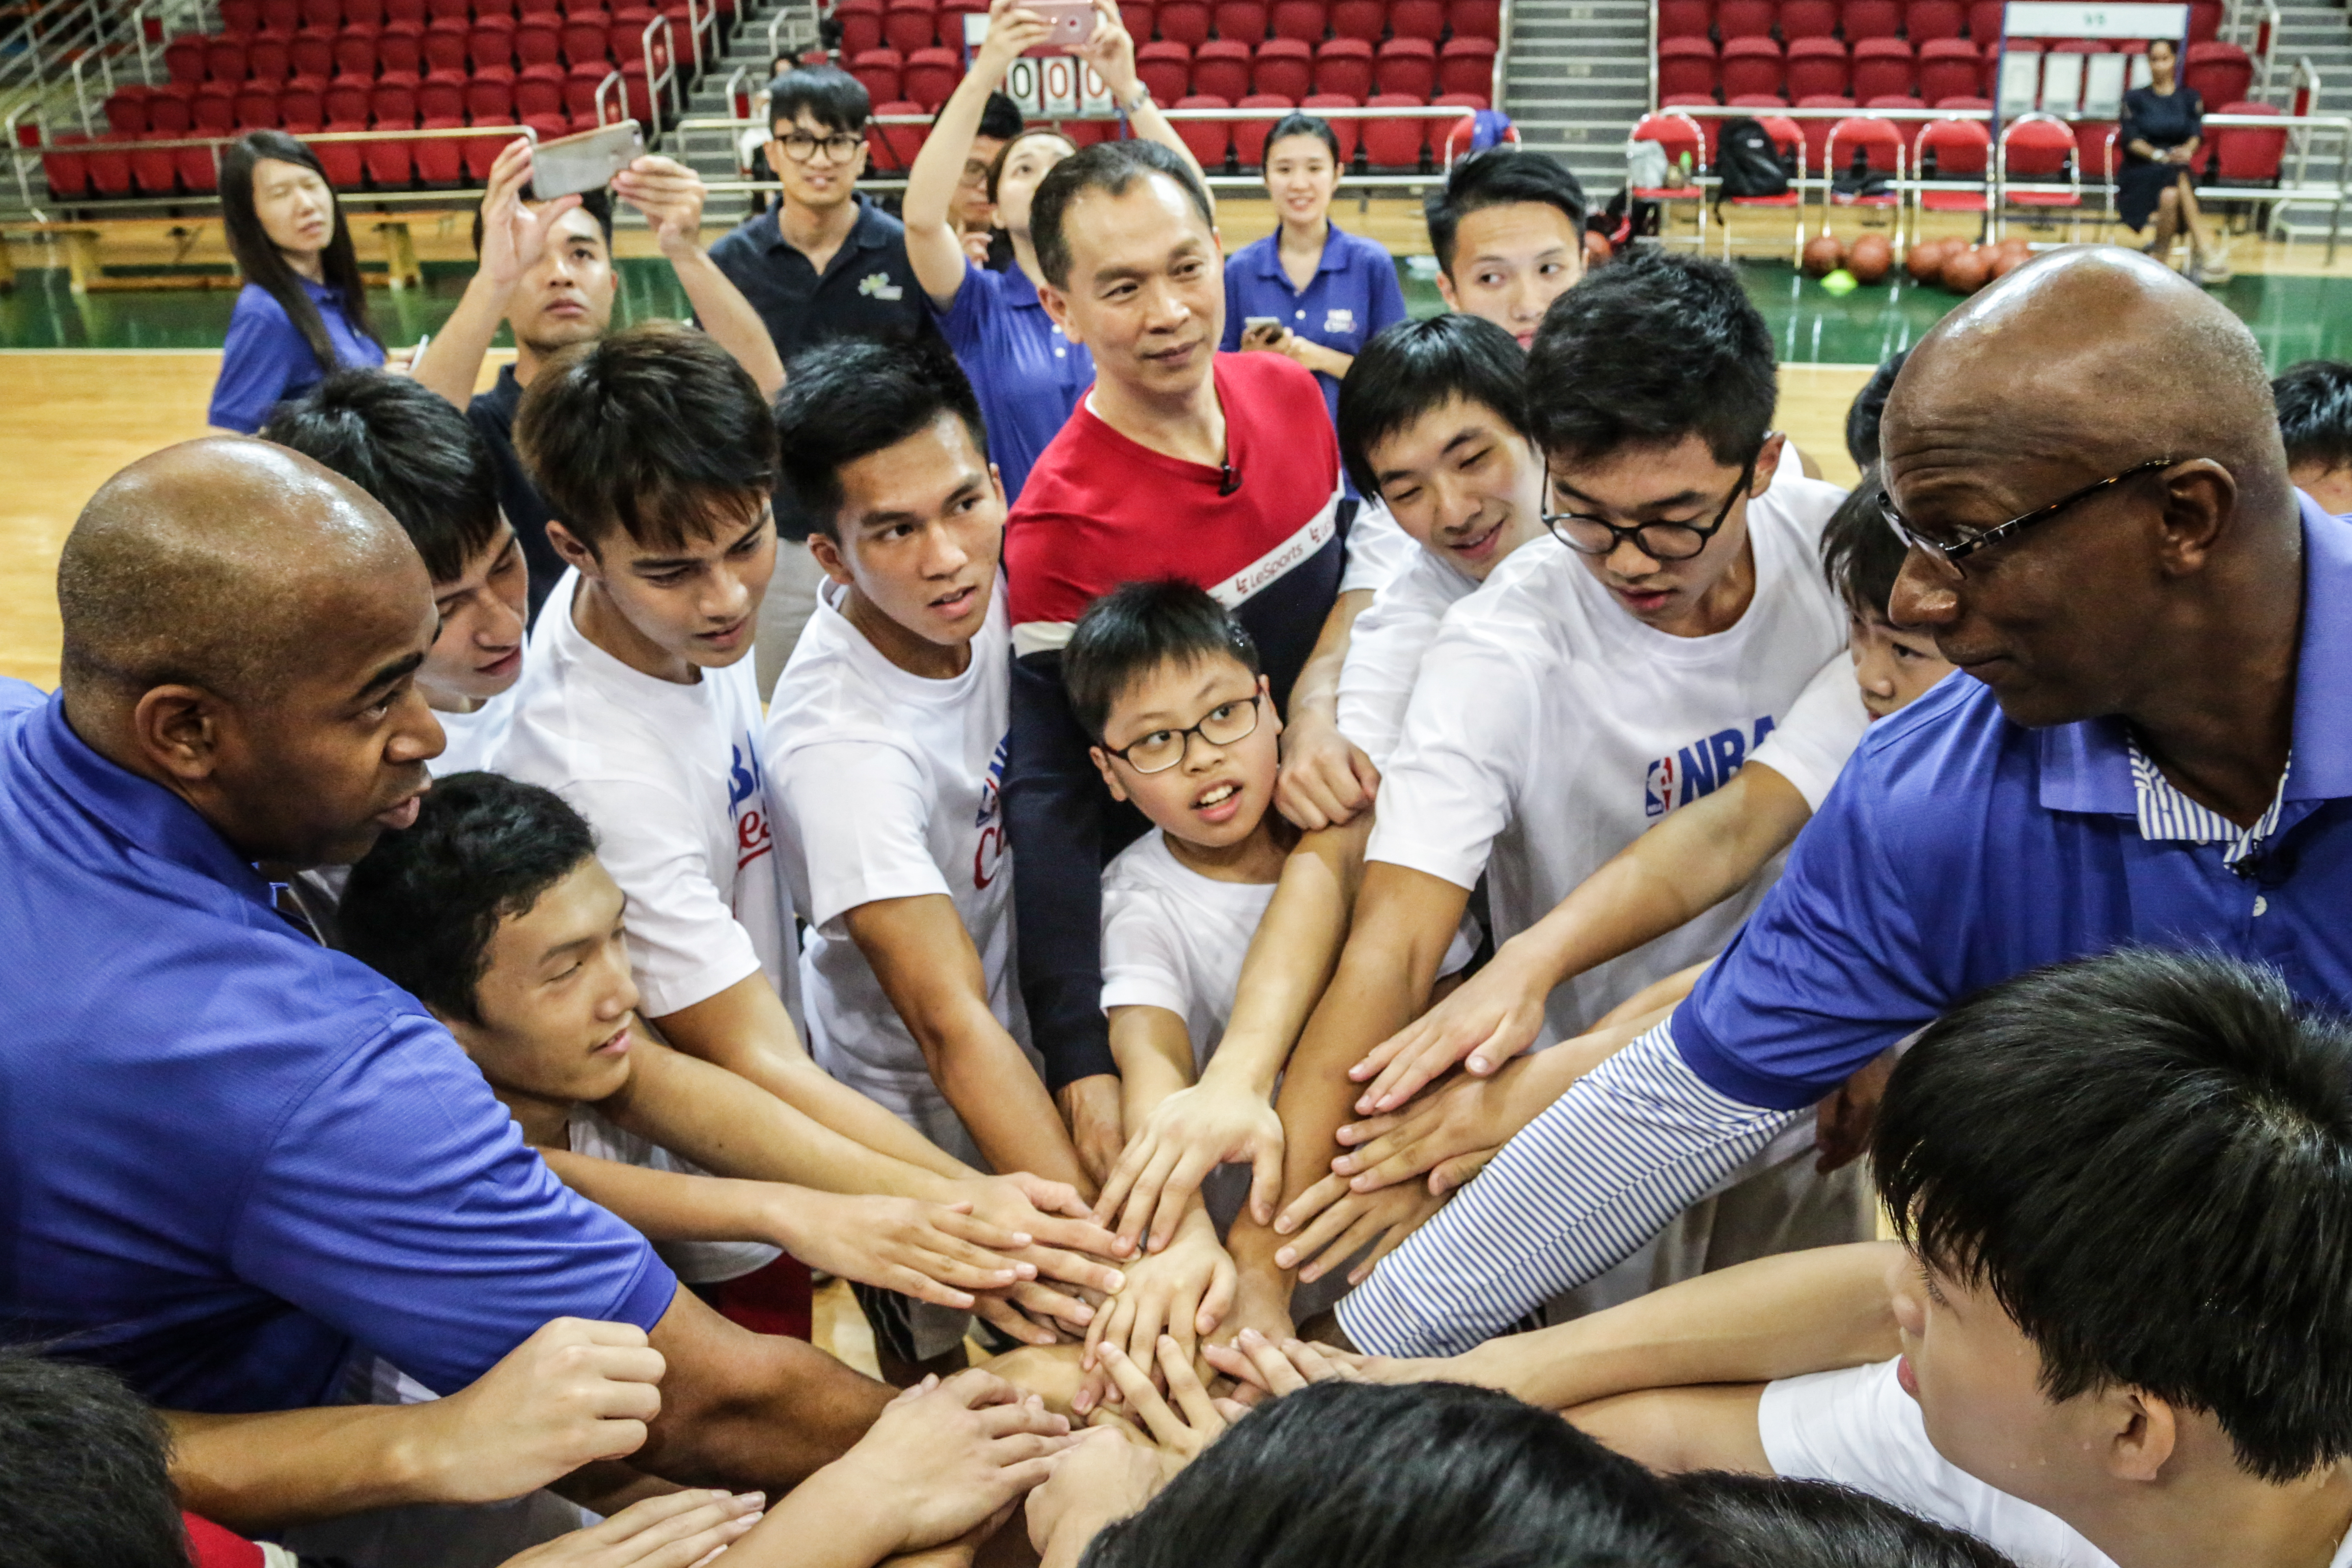 Andy Chau 攝影師工作紀錄: 活動攝影 - NBA Cares 慈善籃球表演